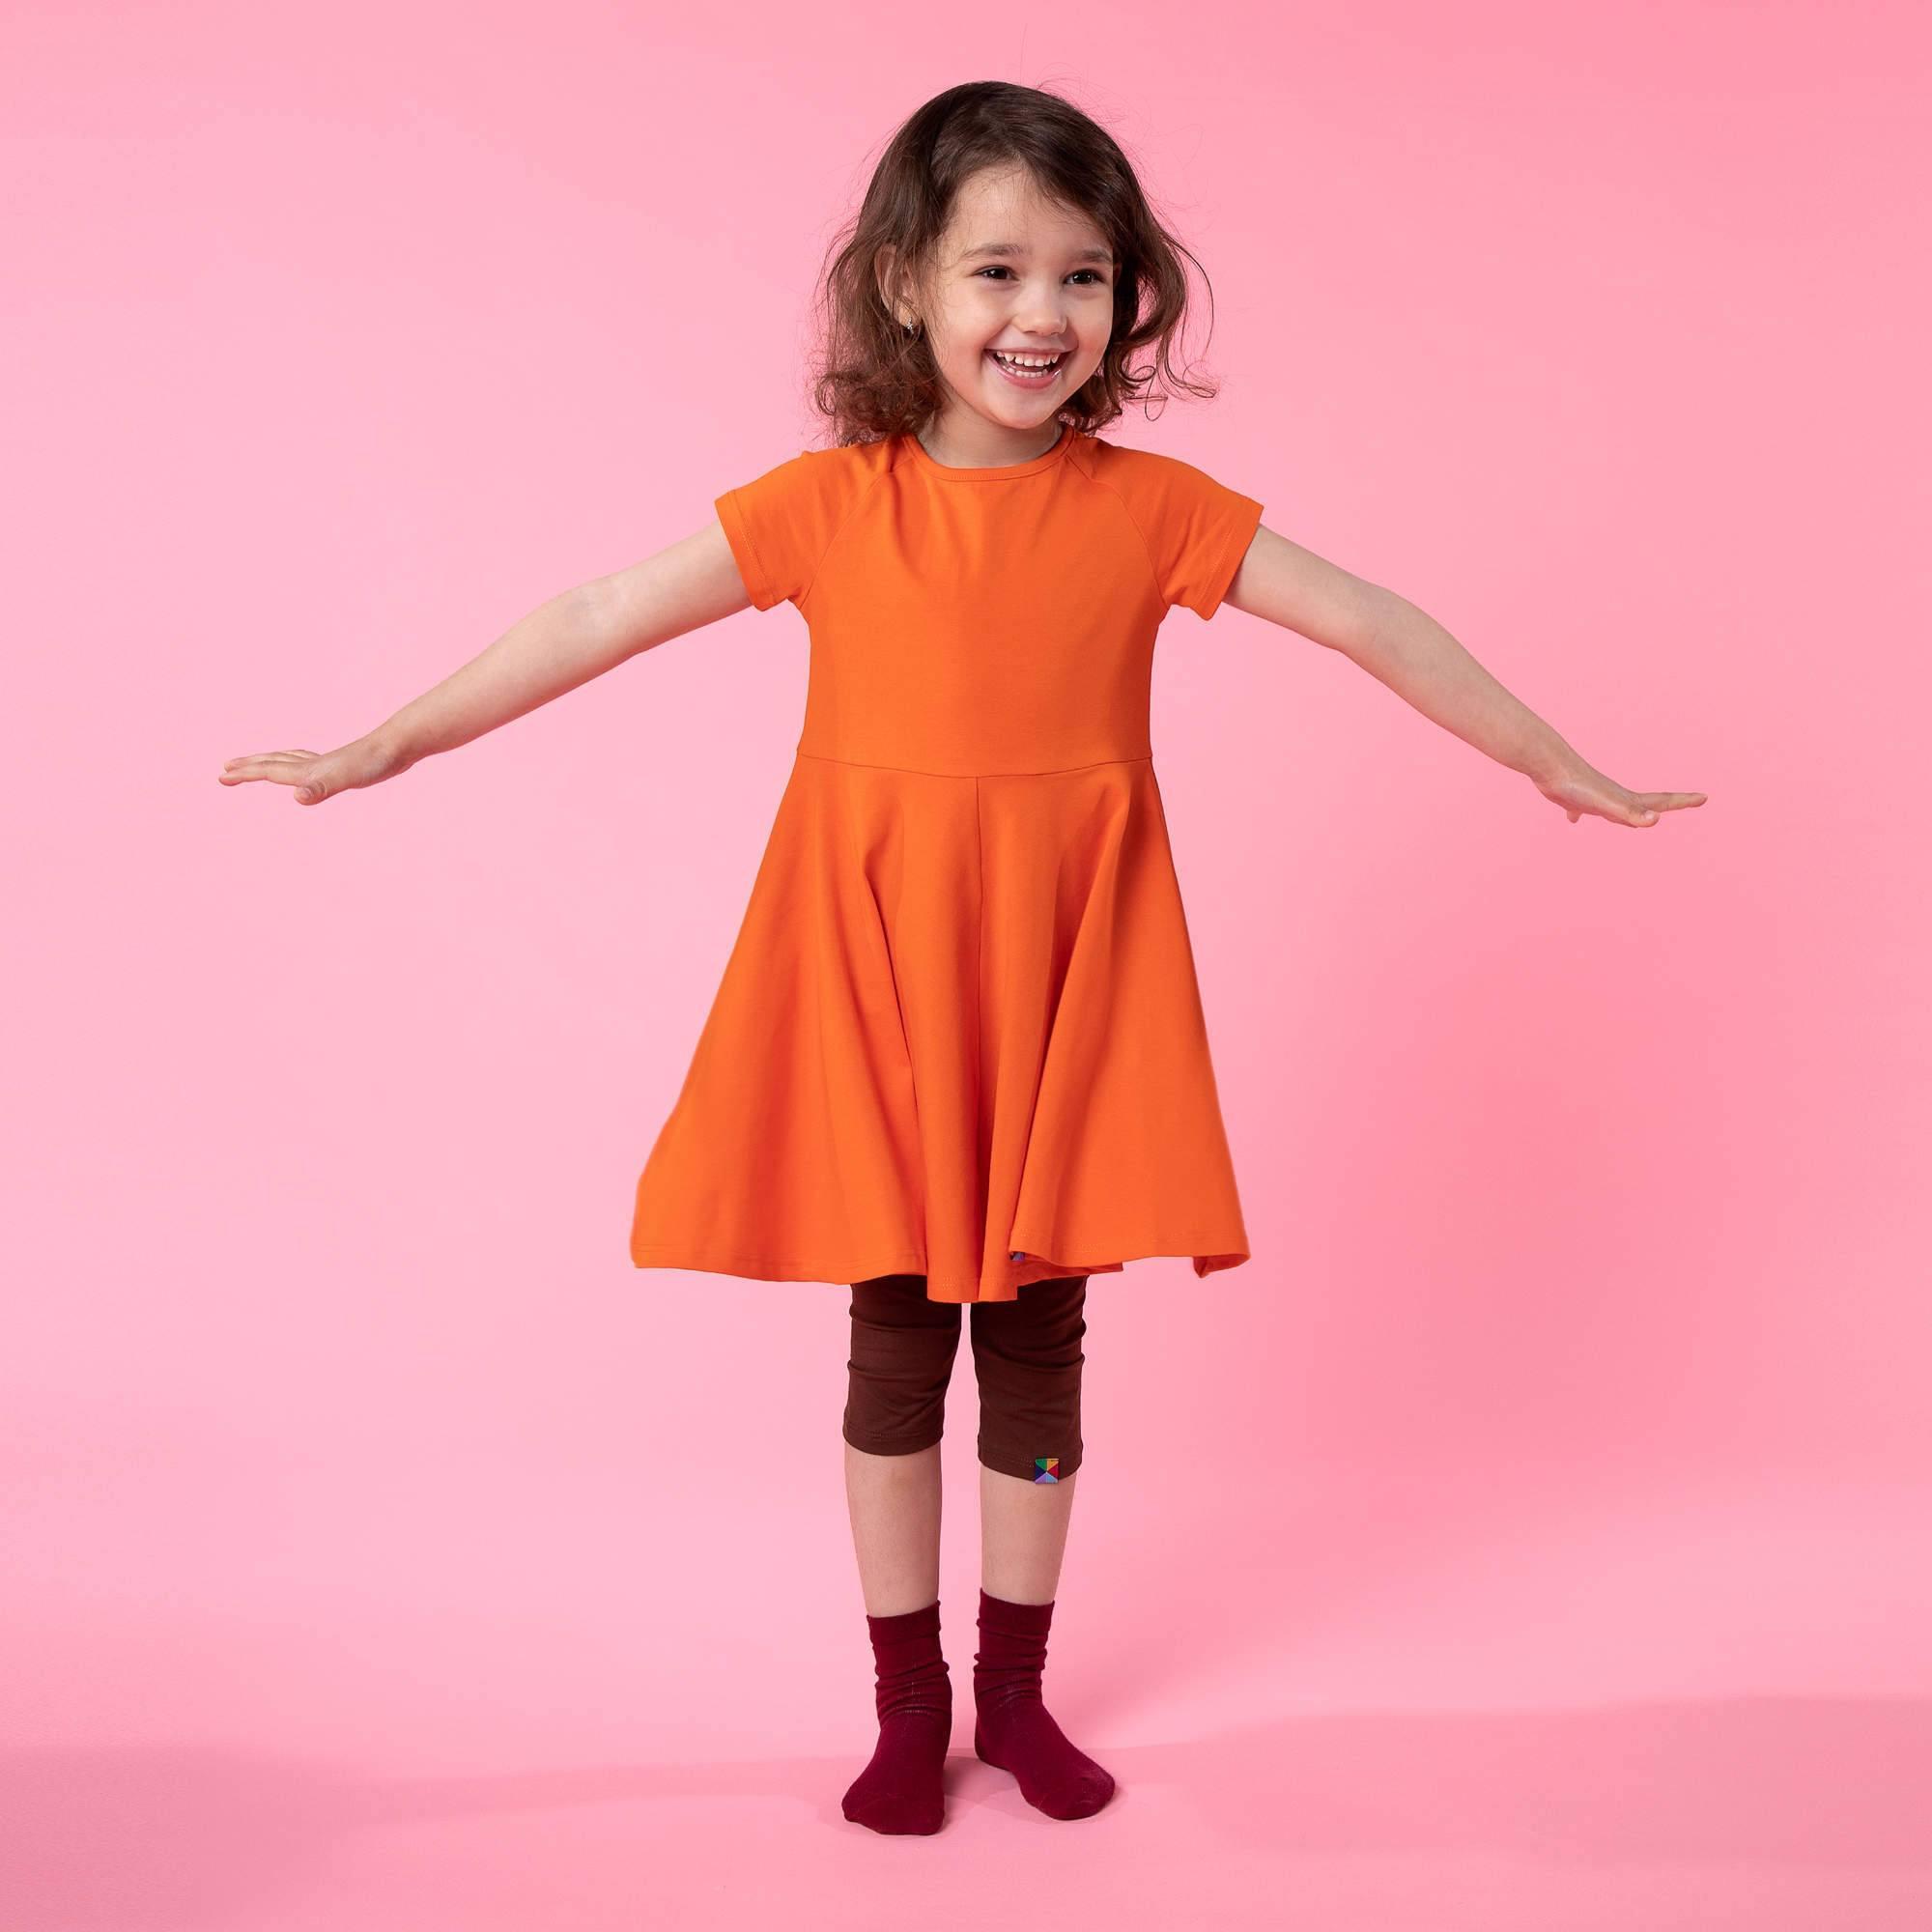 Pomarańczowa sukienka z krótkim rękawem